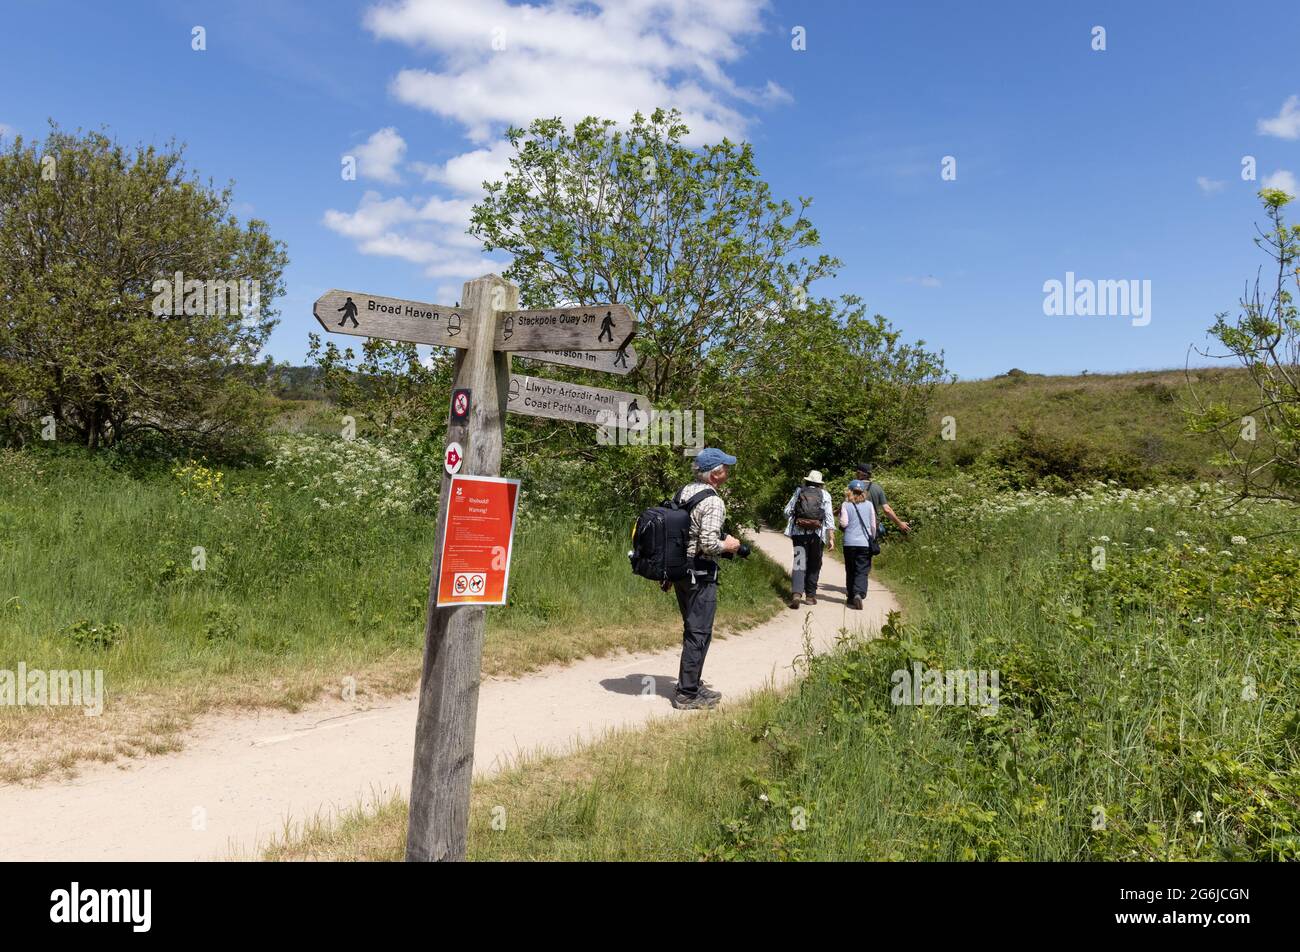 Staycation UK; Wanderwegschild und Spaziergänger, die im Sommer auf dem Stackpole Estate in der walisischen Landschaft spazieren gehen, Pembrokeshire Wales UK Stockfoto